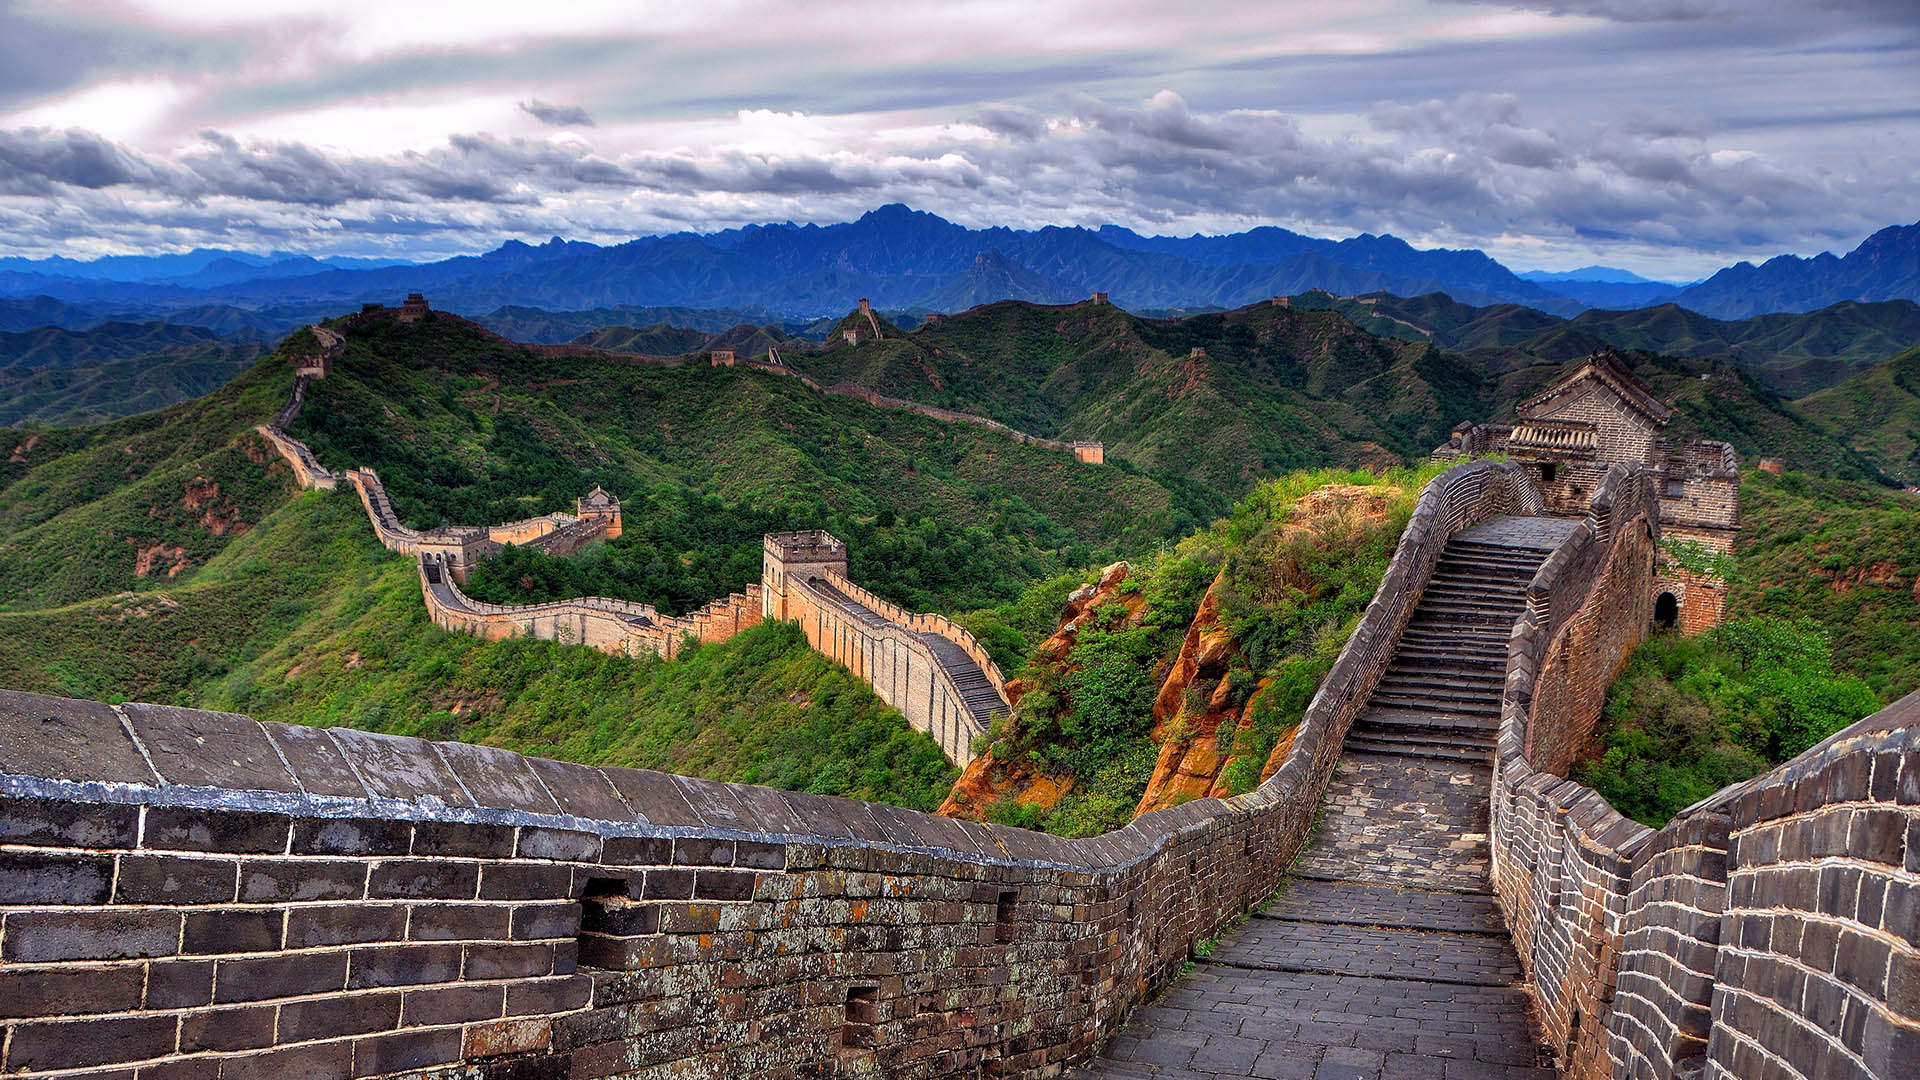 Исторические факты о китайской стене